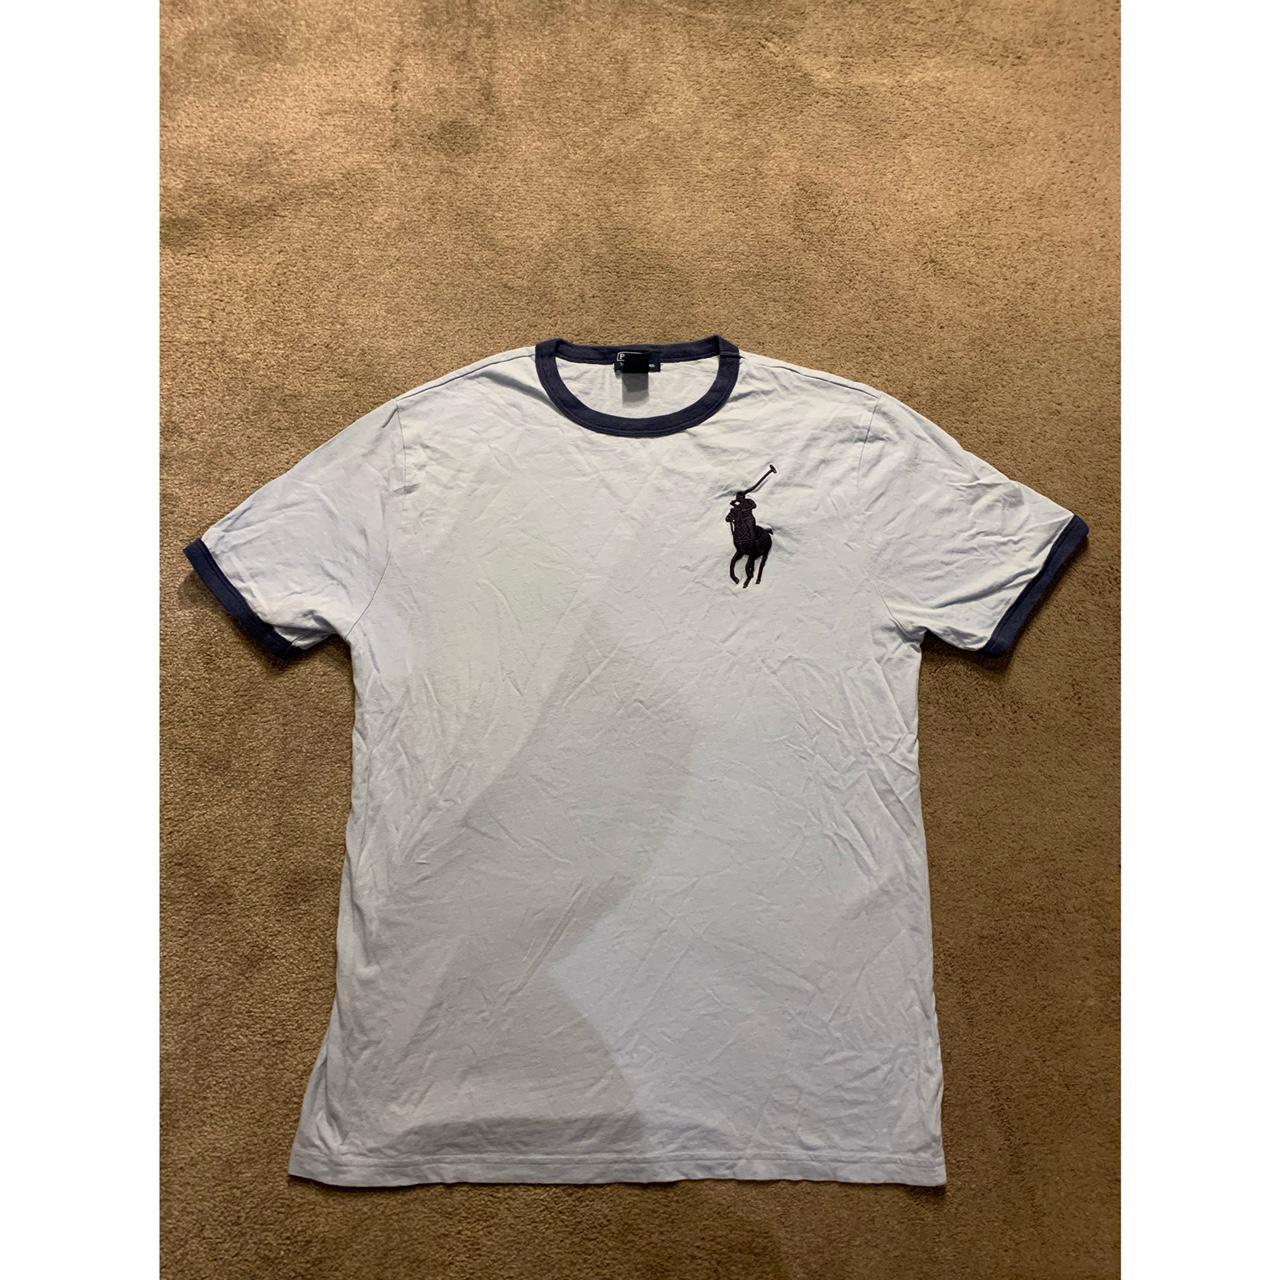 Blue Polo Ralph Lauren T-Shirt (XL 18-20) - Depop